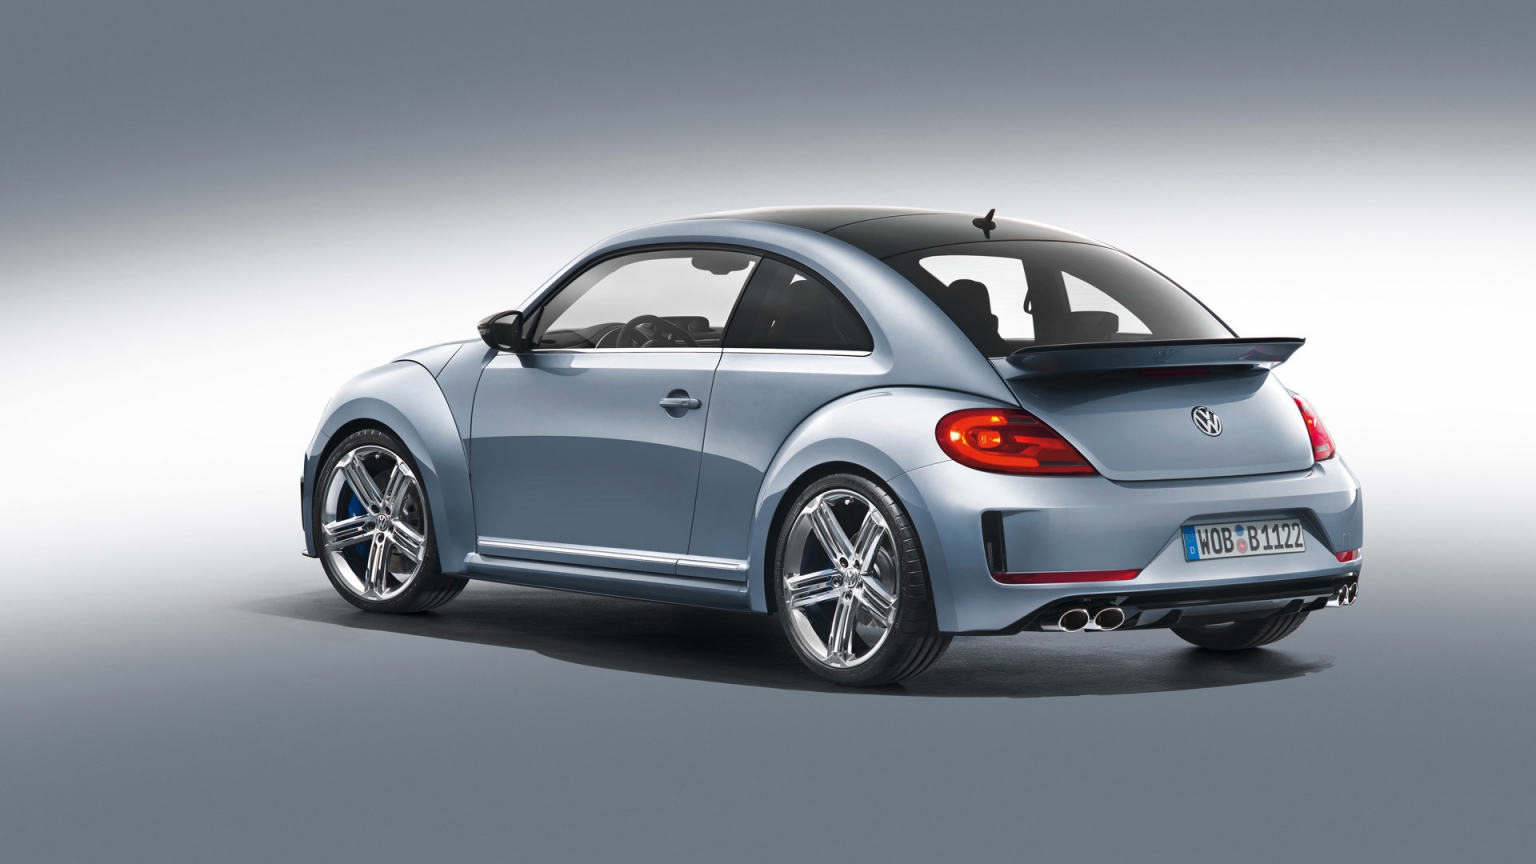 2011 Volkswagen Beetle R Concept Studio for 1536 x 864 HDTV resolution